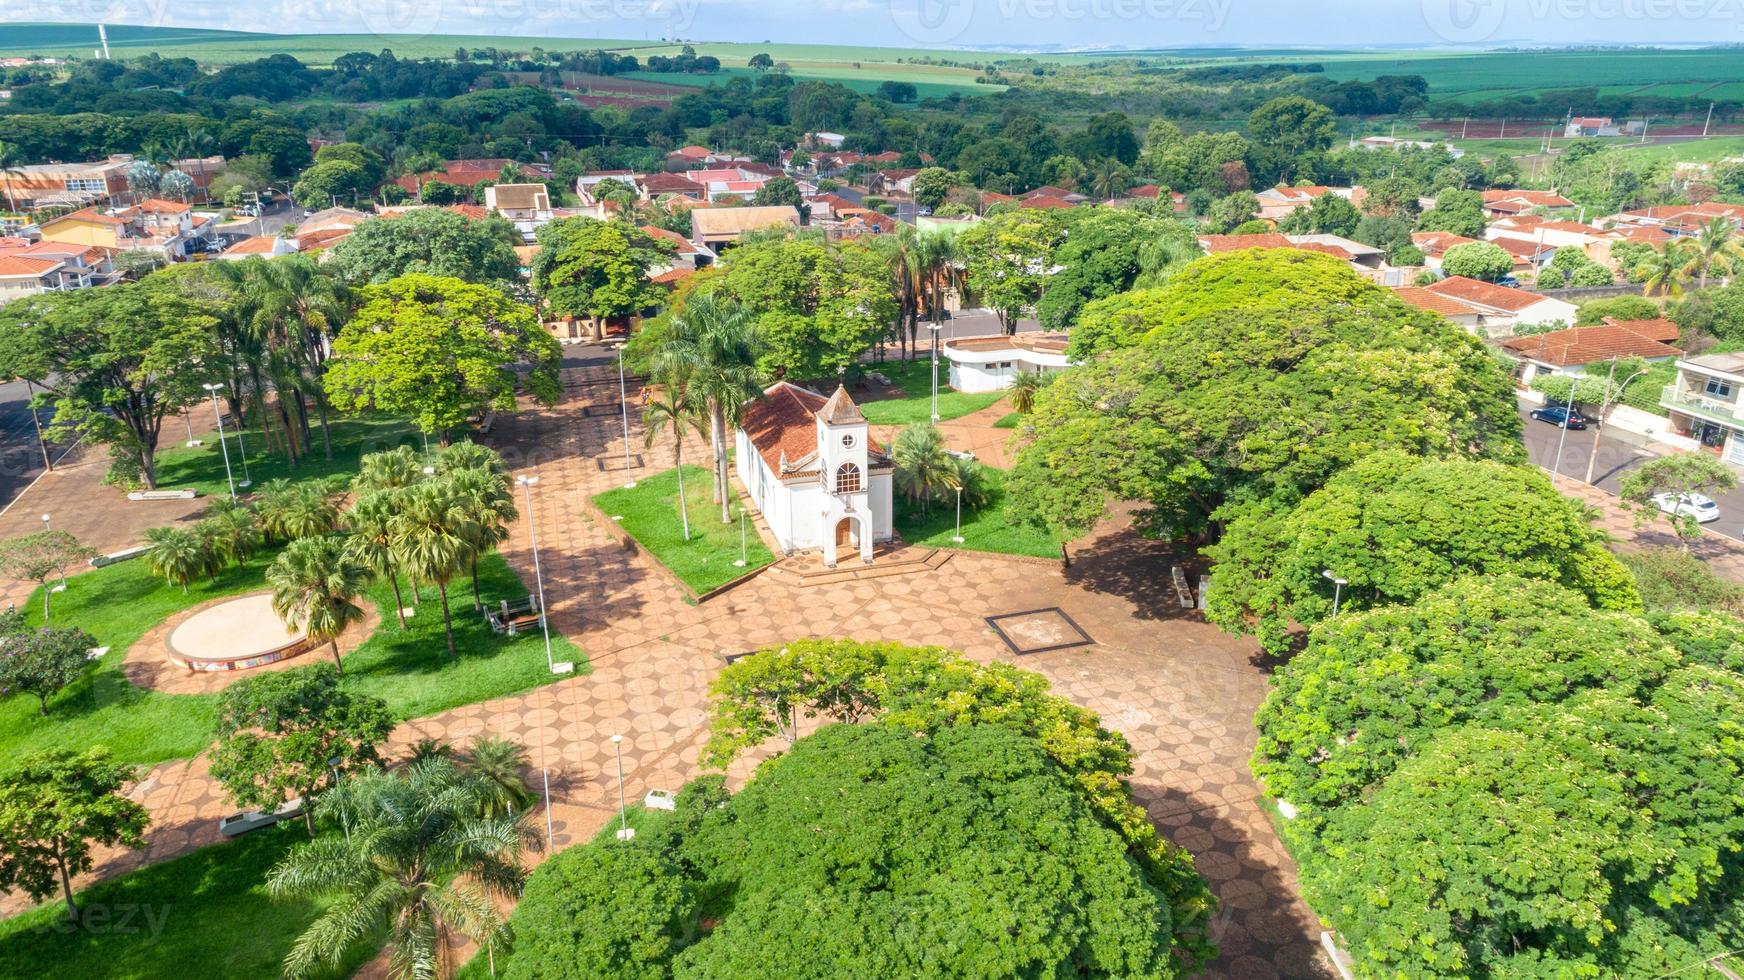 imagen aérea del centro de la ciudad de pradopolis, sao paulo, brasil. se puede ver la iglesia madre en el centro de la ciudad. foto